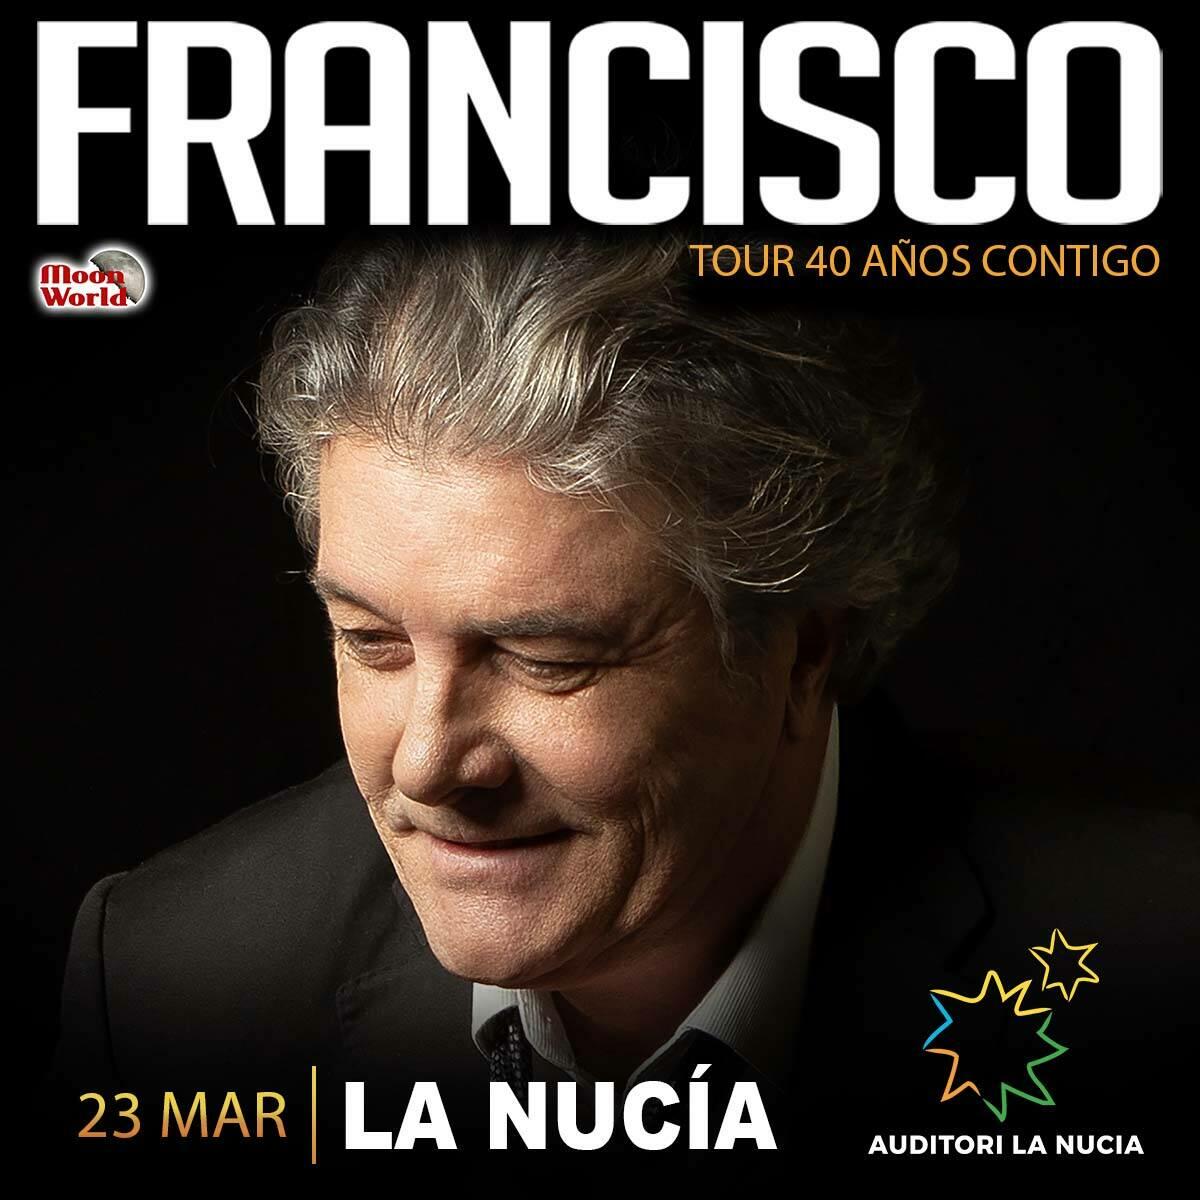 Francisco cantará en l’Auditori de La Nucía este sábado